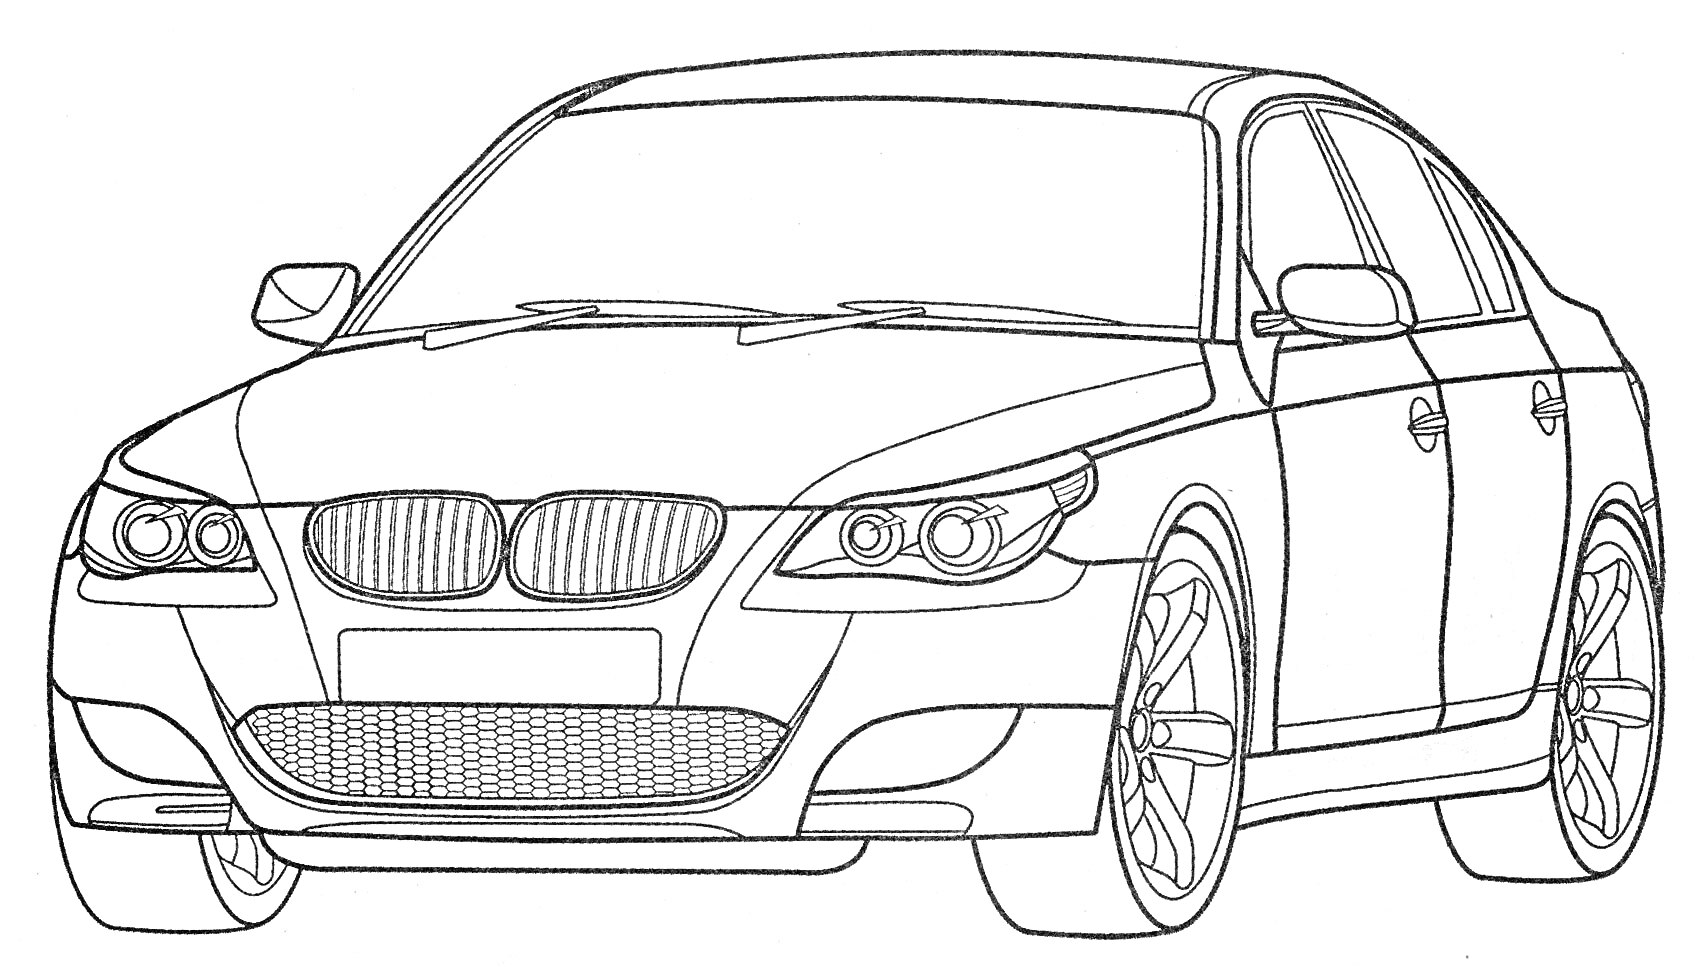 Раскраска Линия раскраски автомобиля BMW с передним обзором, фарами, капотом, боковыми зеркалами, дверями, колесами и радиаторной решеткой.